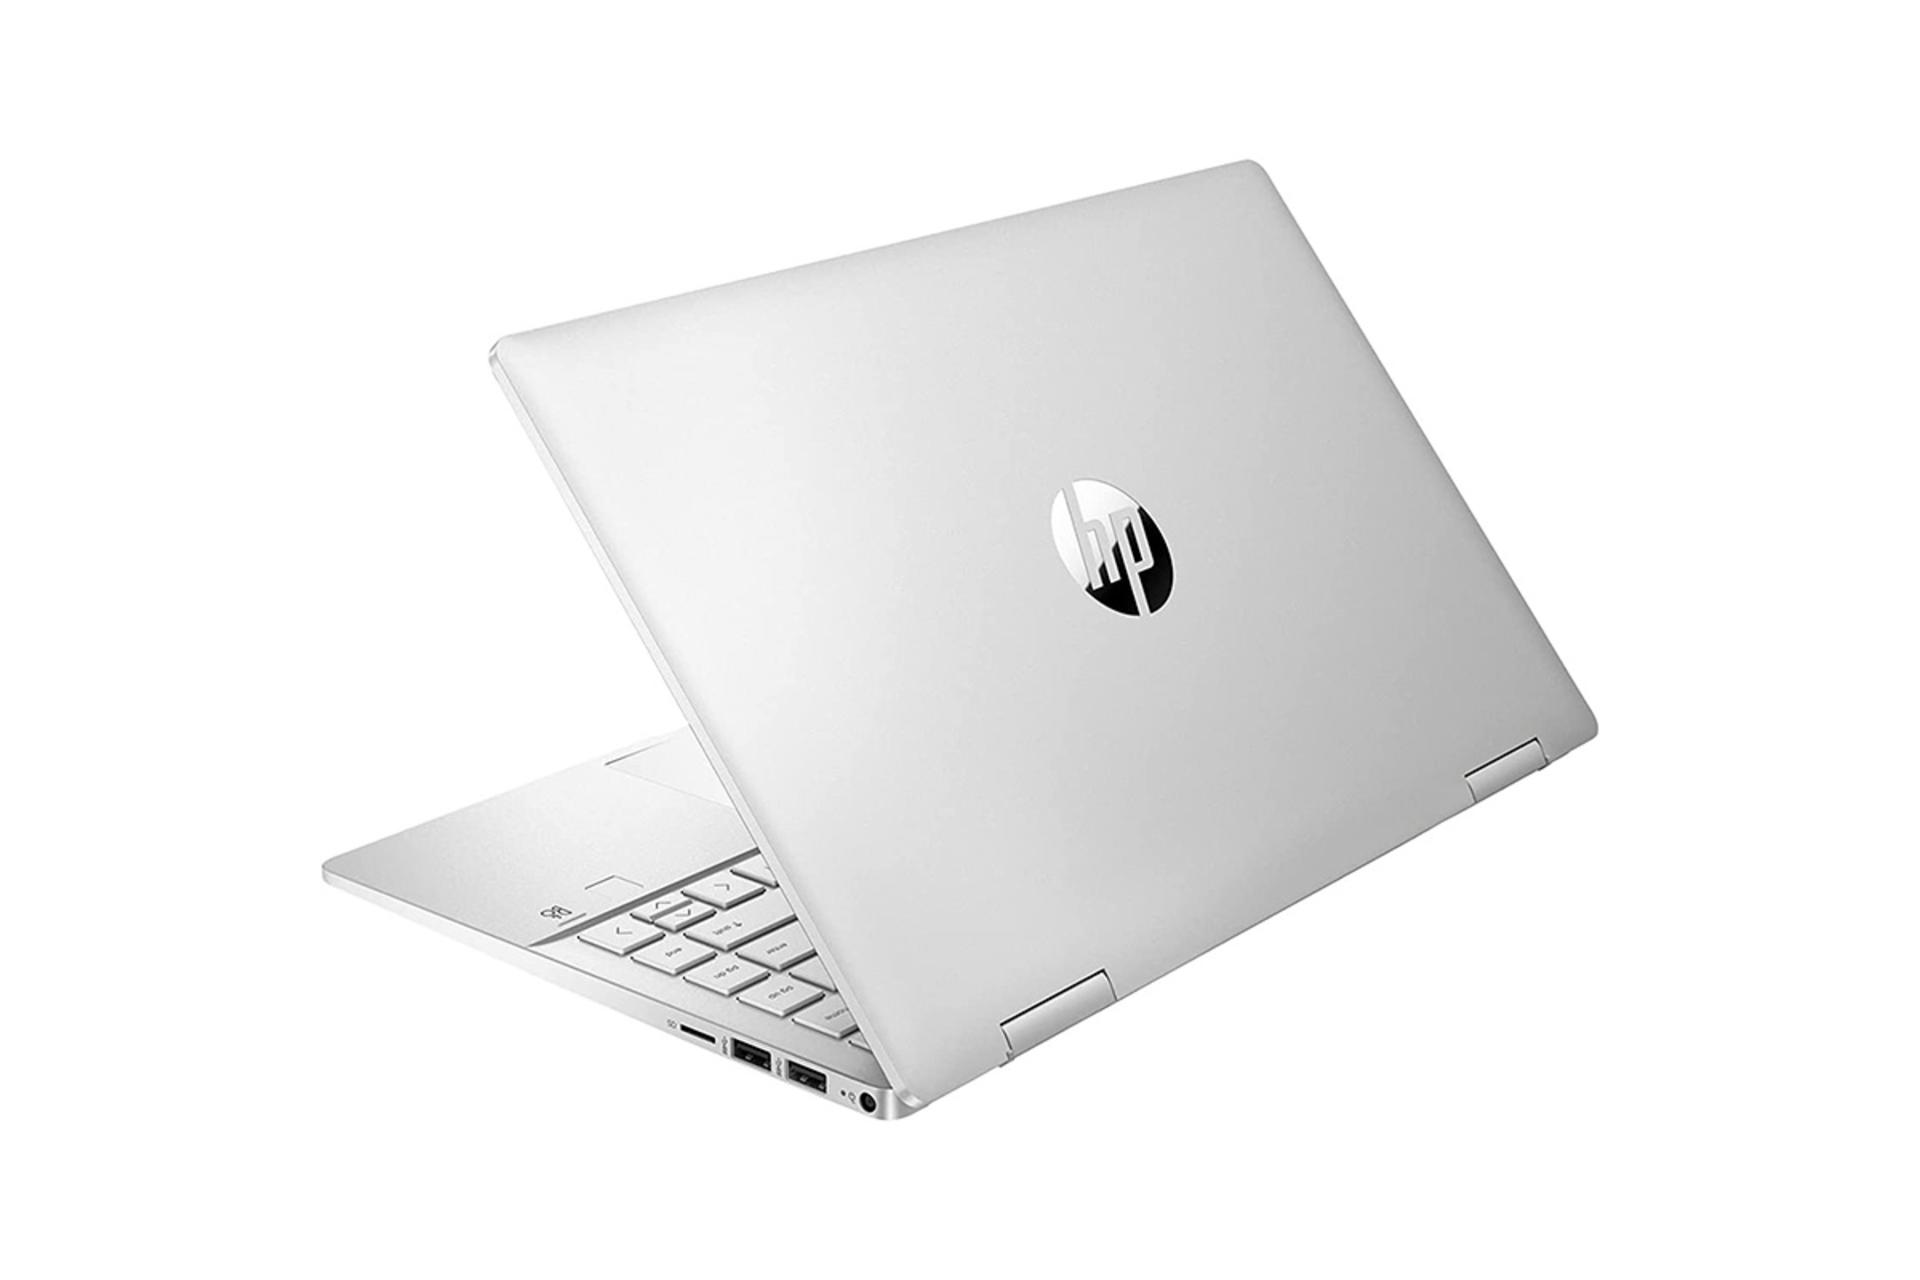 مرجع متخصصين ايران لپ تاپ اچ پي HP Pavilion X360 14 DY2050WM نماي پشت رنگ نقره اي